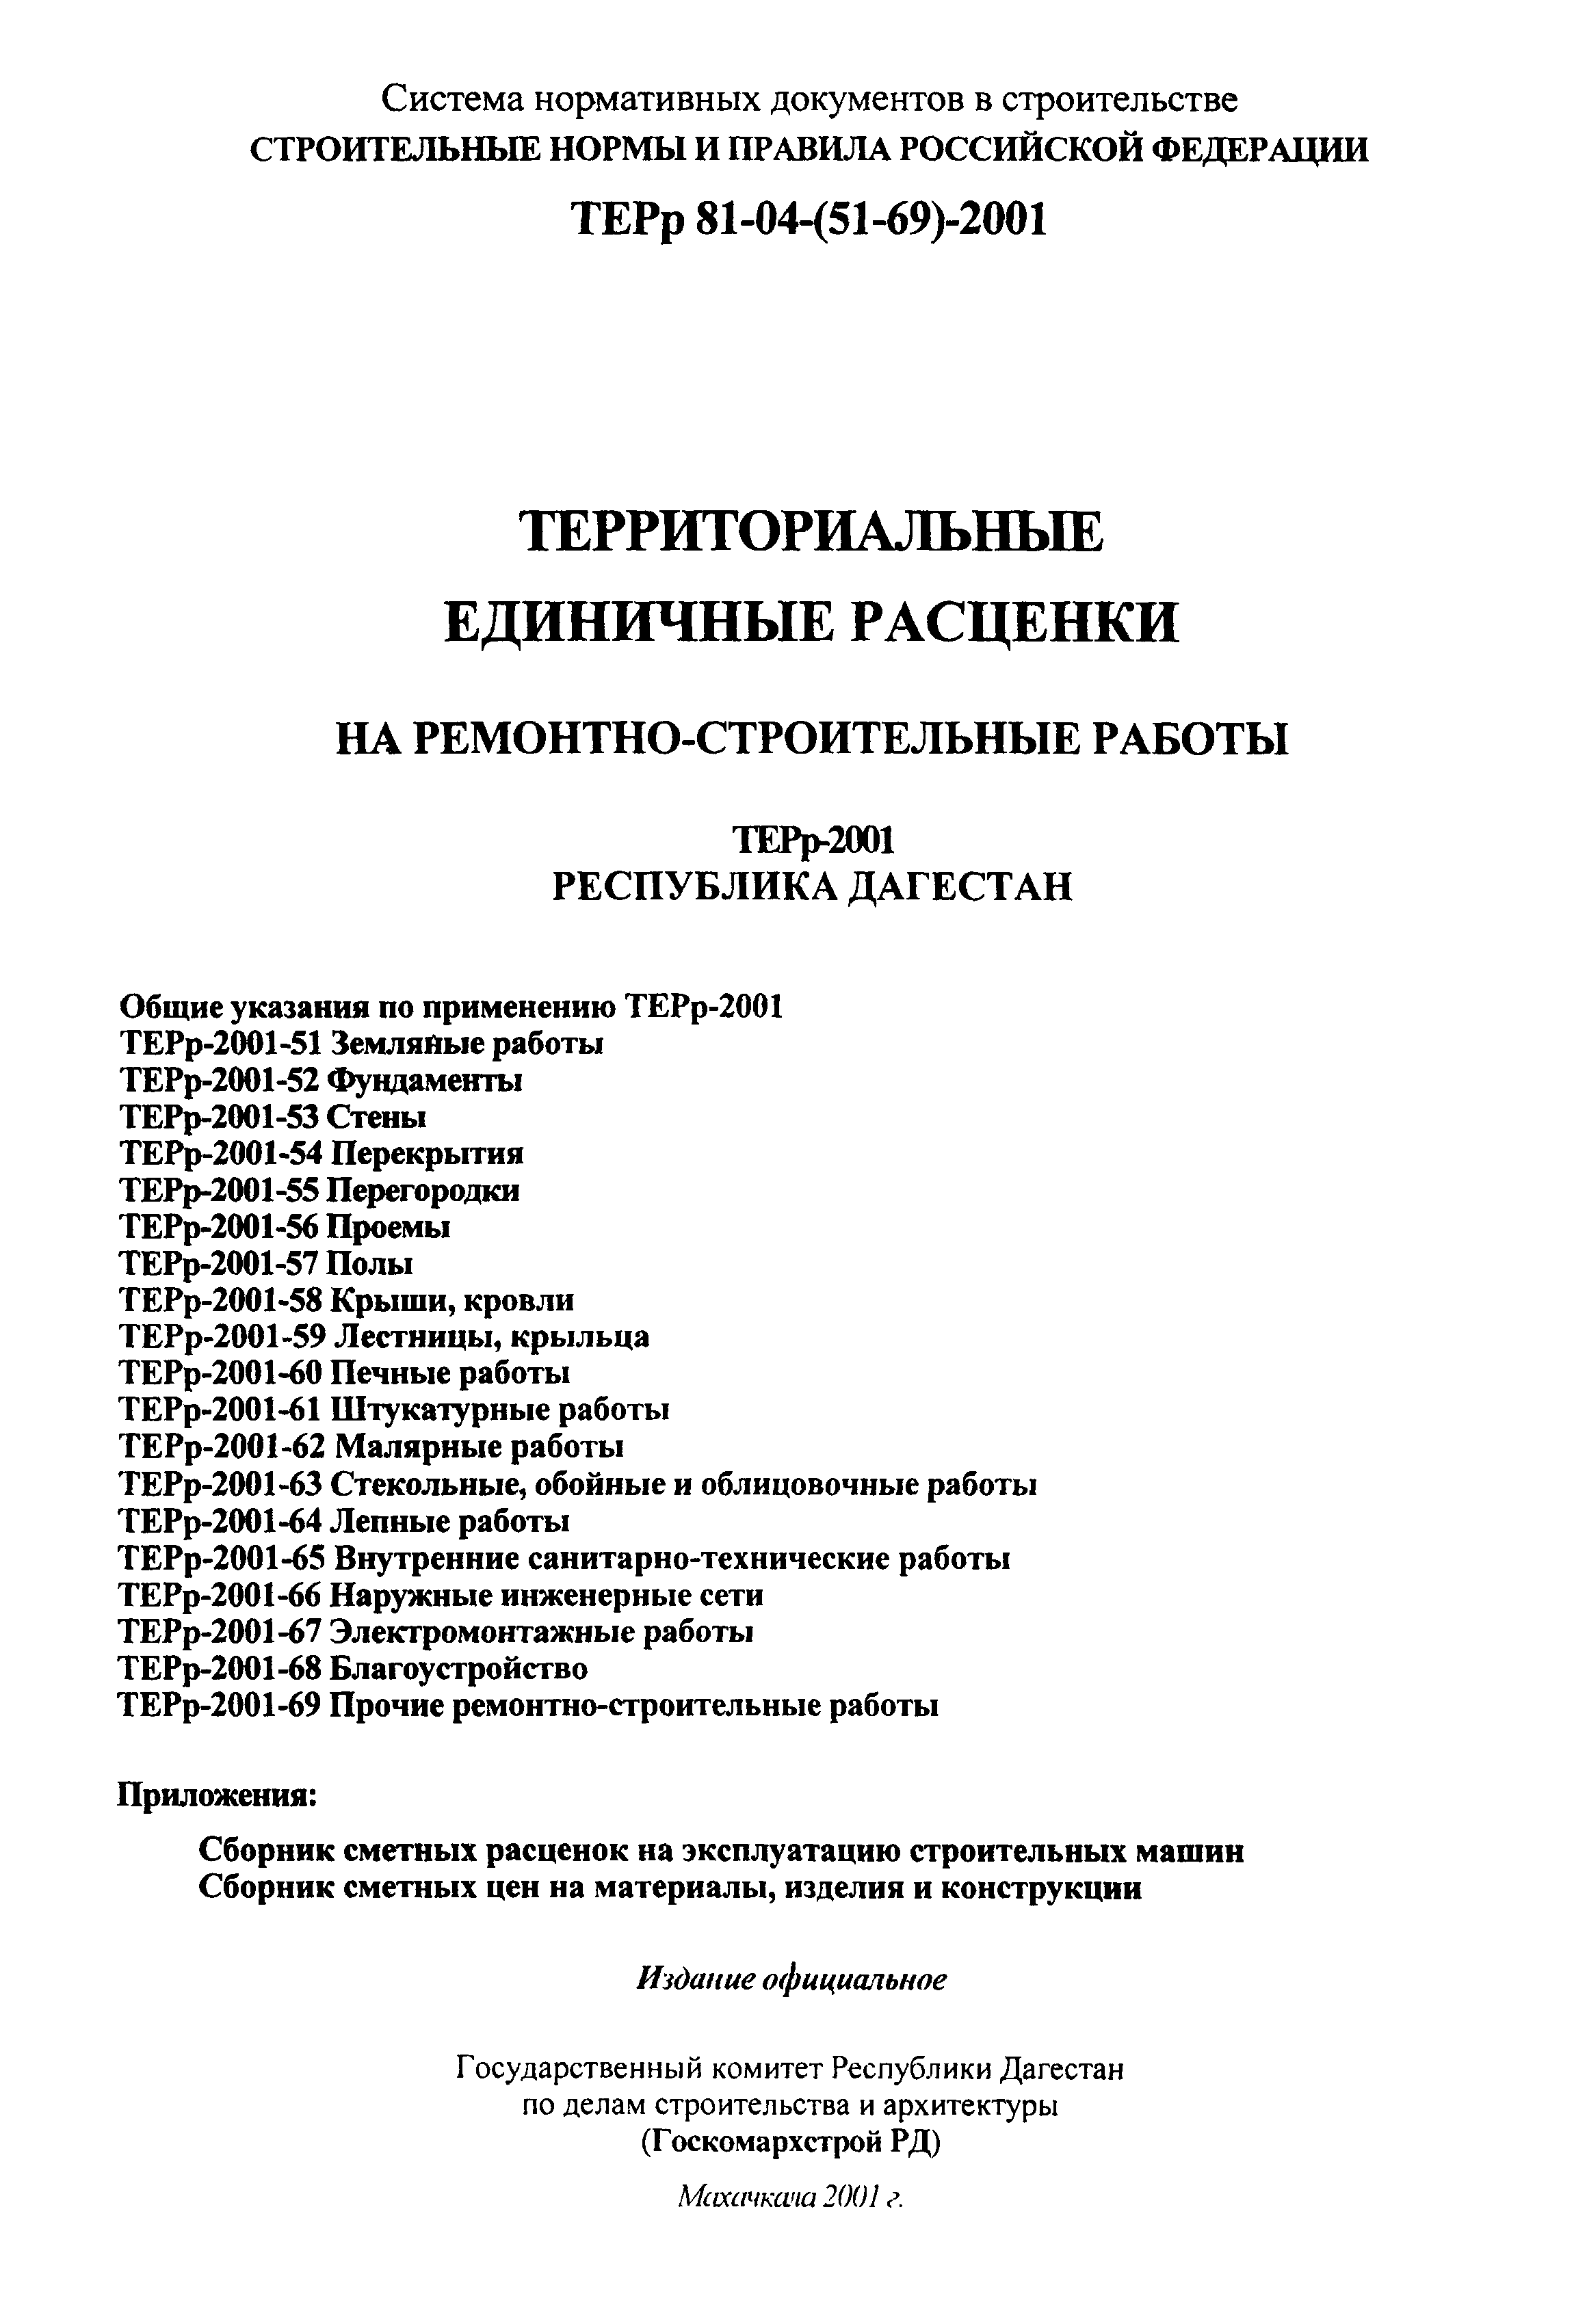 ТЕРр Республика Дагестан 2001-68